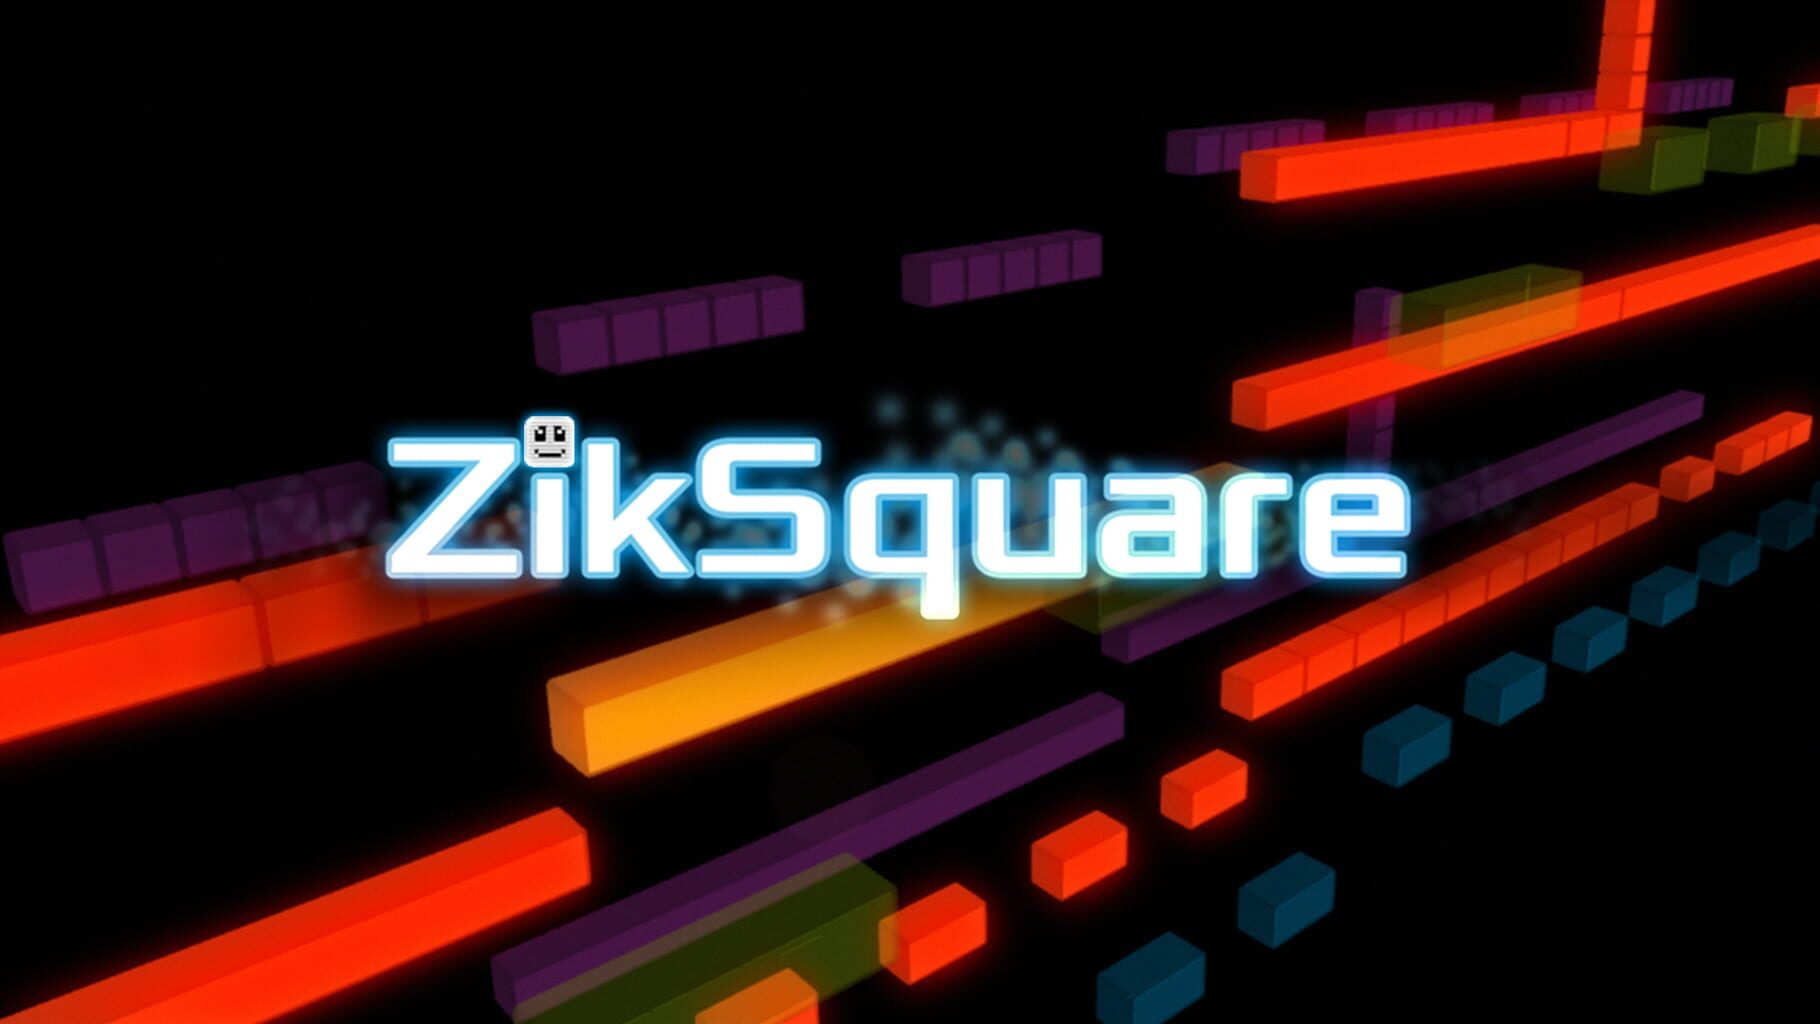 ZikSquare artwork